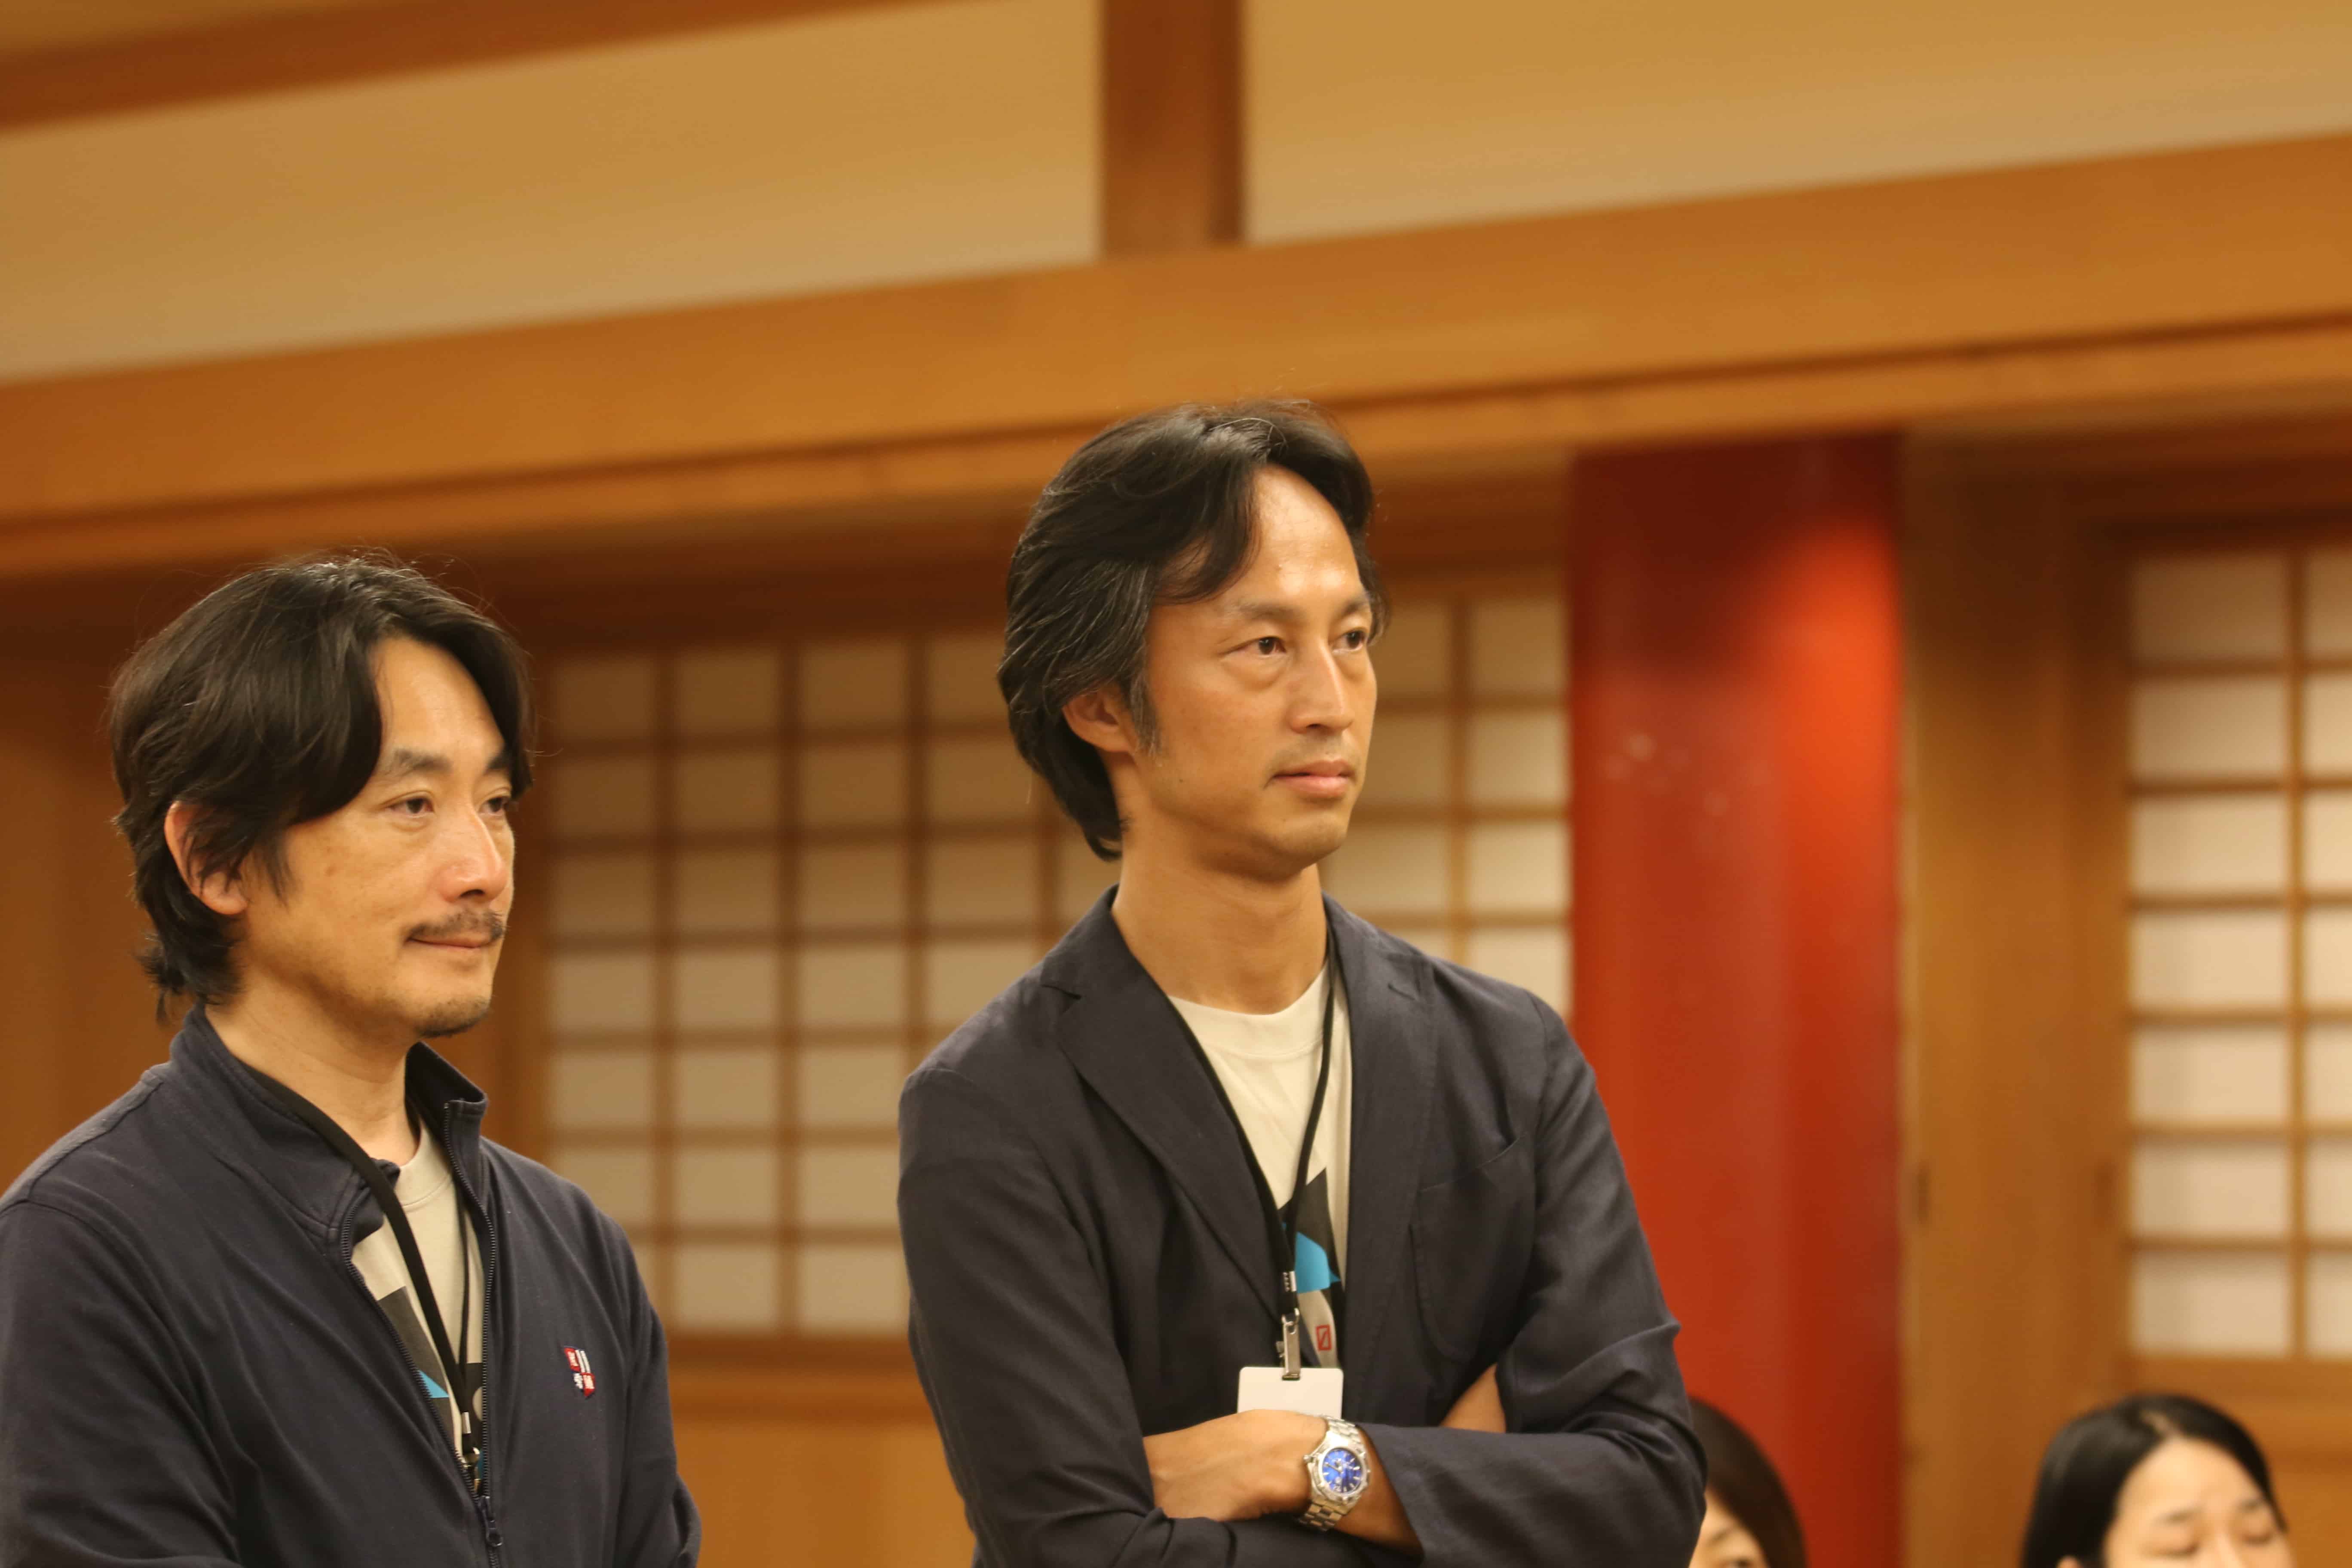 Zen 2.0 Co-founder Mikio Shishido 